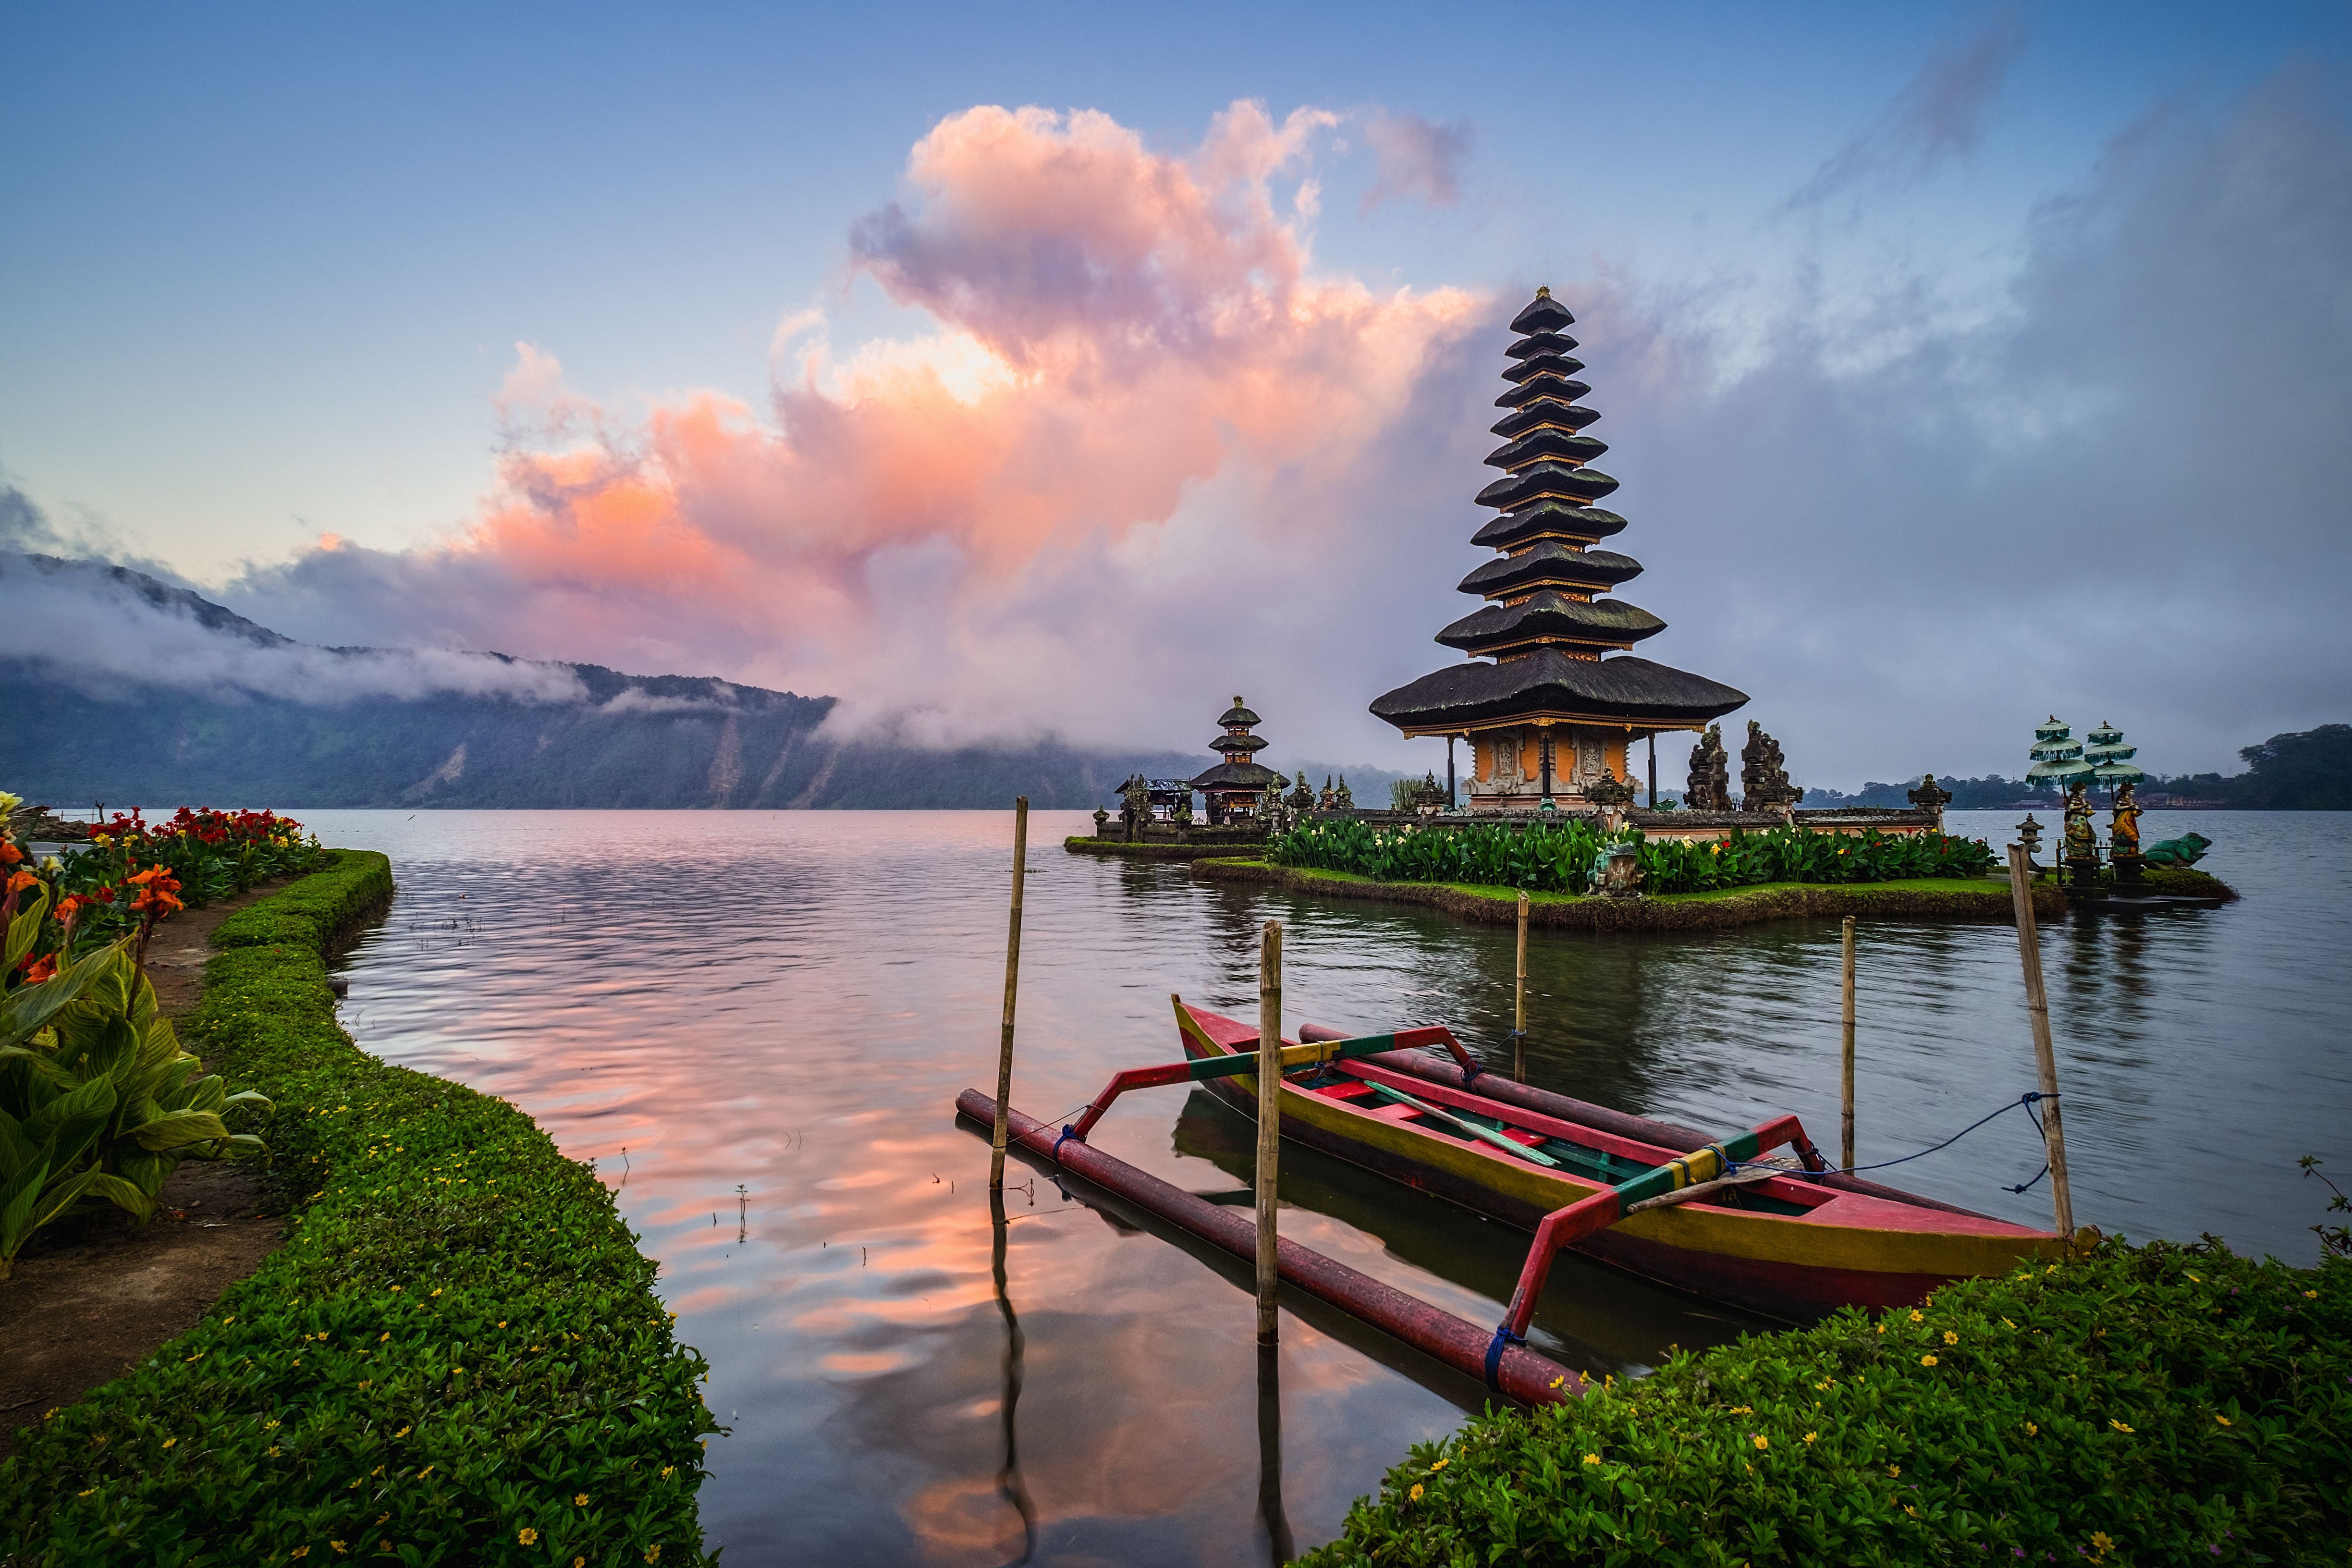 Найти бали. Бали (остров в малайском архипелаге) климат. Индонезия Бали. Пура улун дану братан на острове Бали, Индонезия. Бали (остров в малайском архипелаге) достопримечательности.